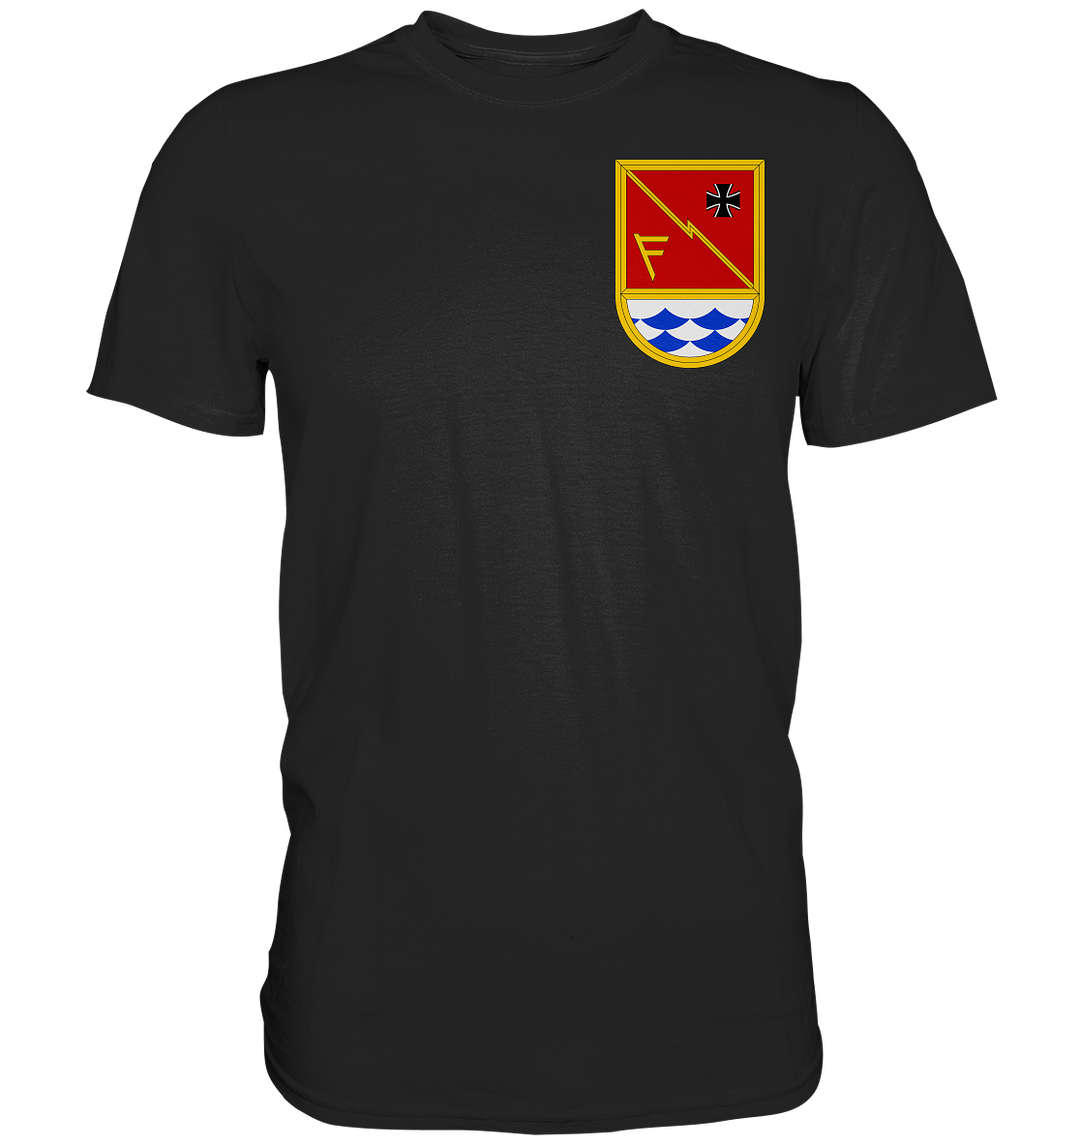 "Schule Informationstechnik der Bundeswehr" - Premium Shirt